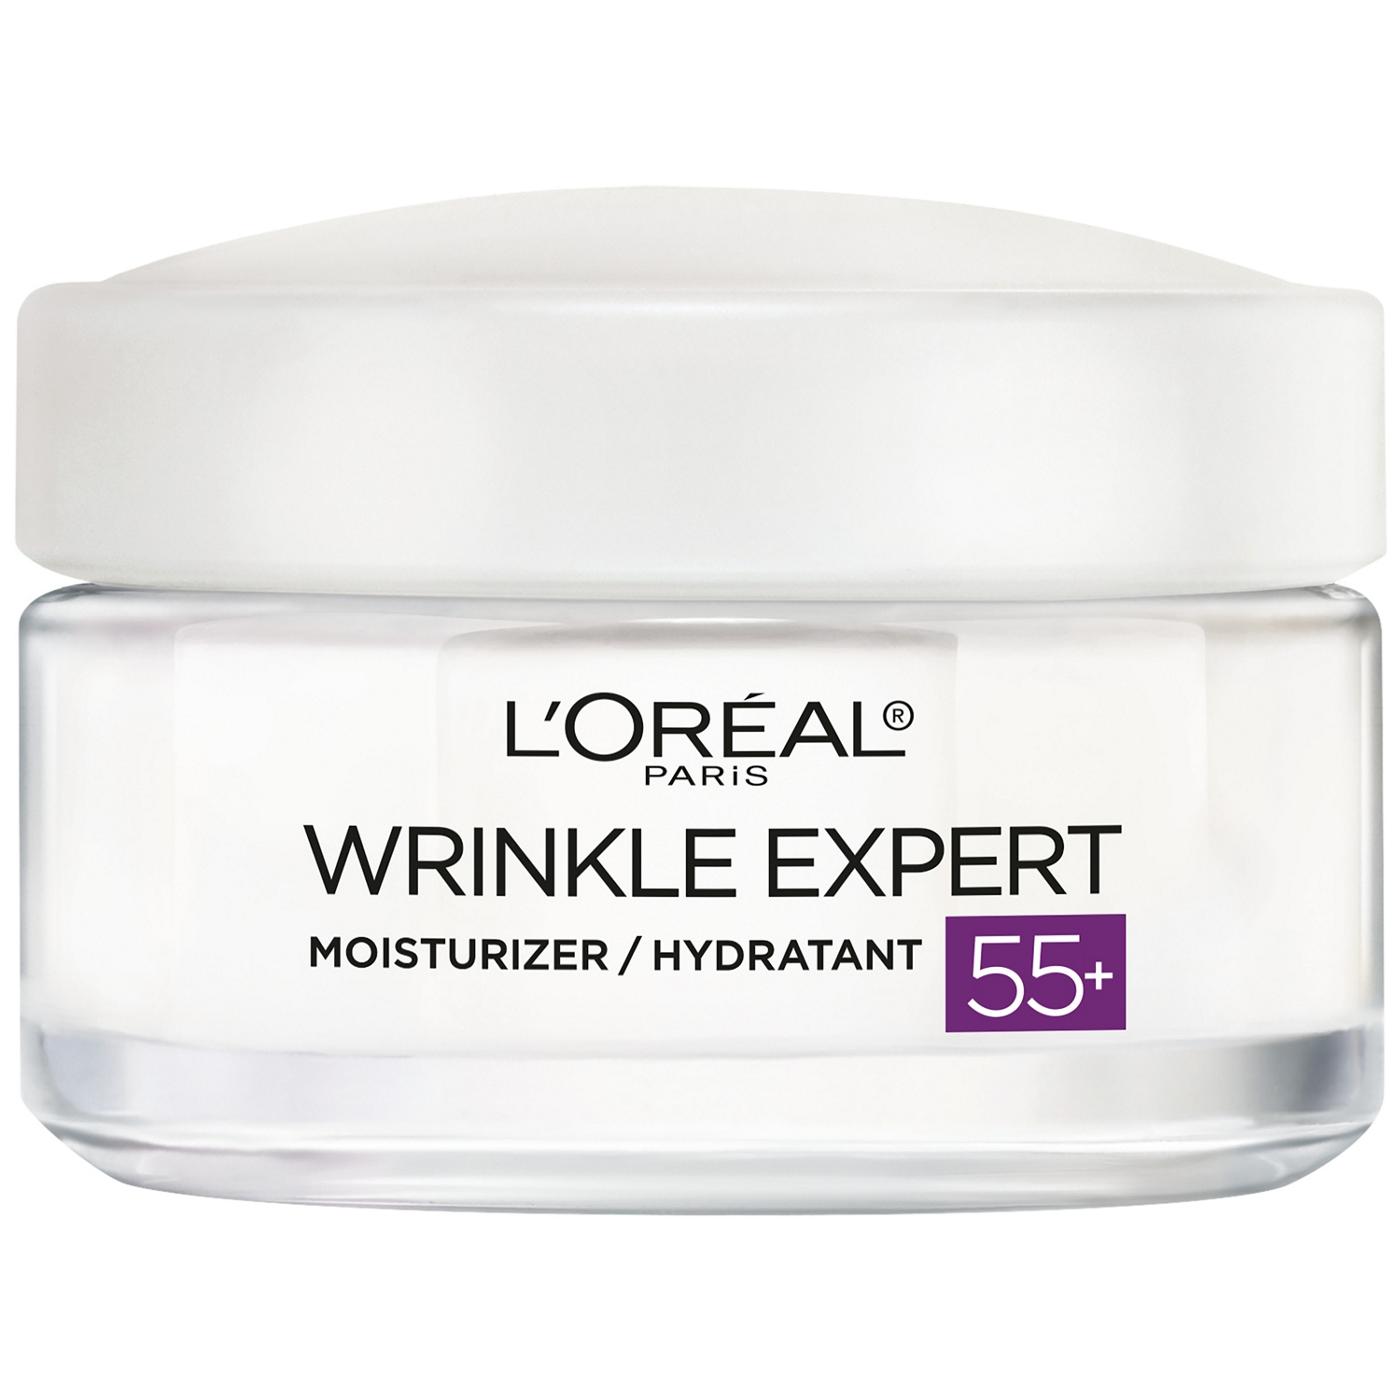 L'Oréal Paris Wrinkle Expert Age 55 Plus Anti-Aging Face Moisturizer; image 3 of 6